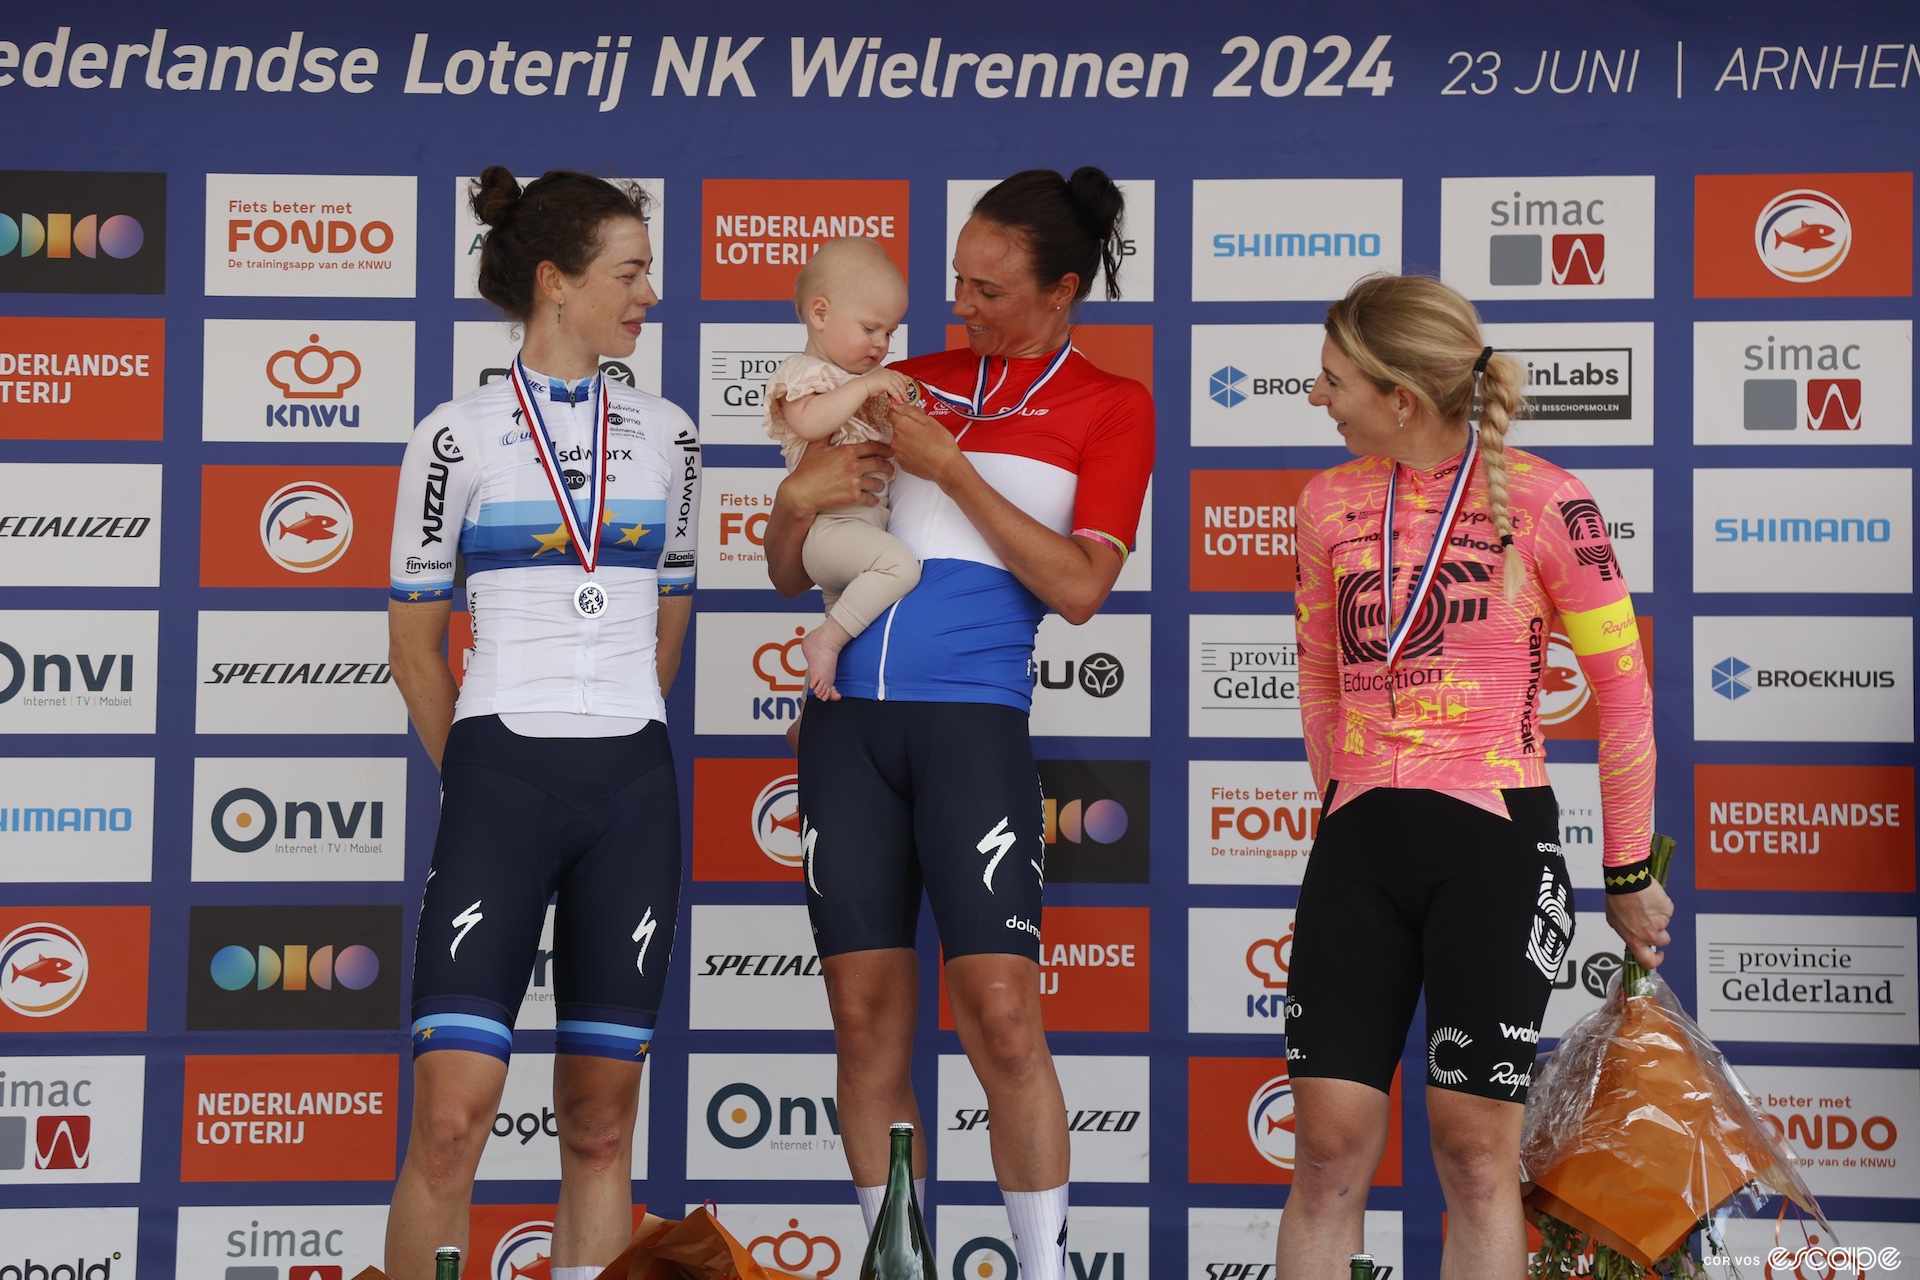 Chantal van den Broek-Blaak holds her daughter Noa on the podium of the Dutch nationals